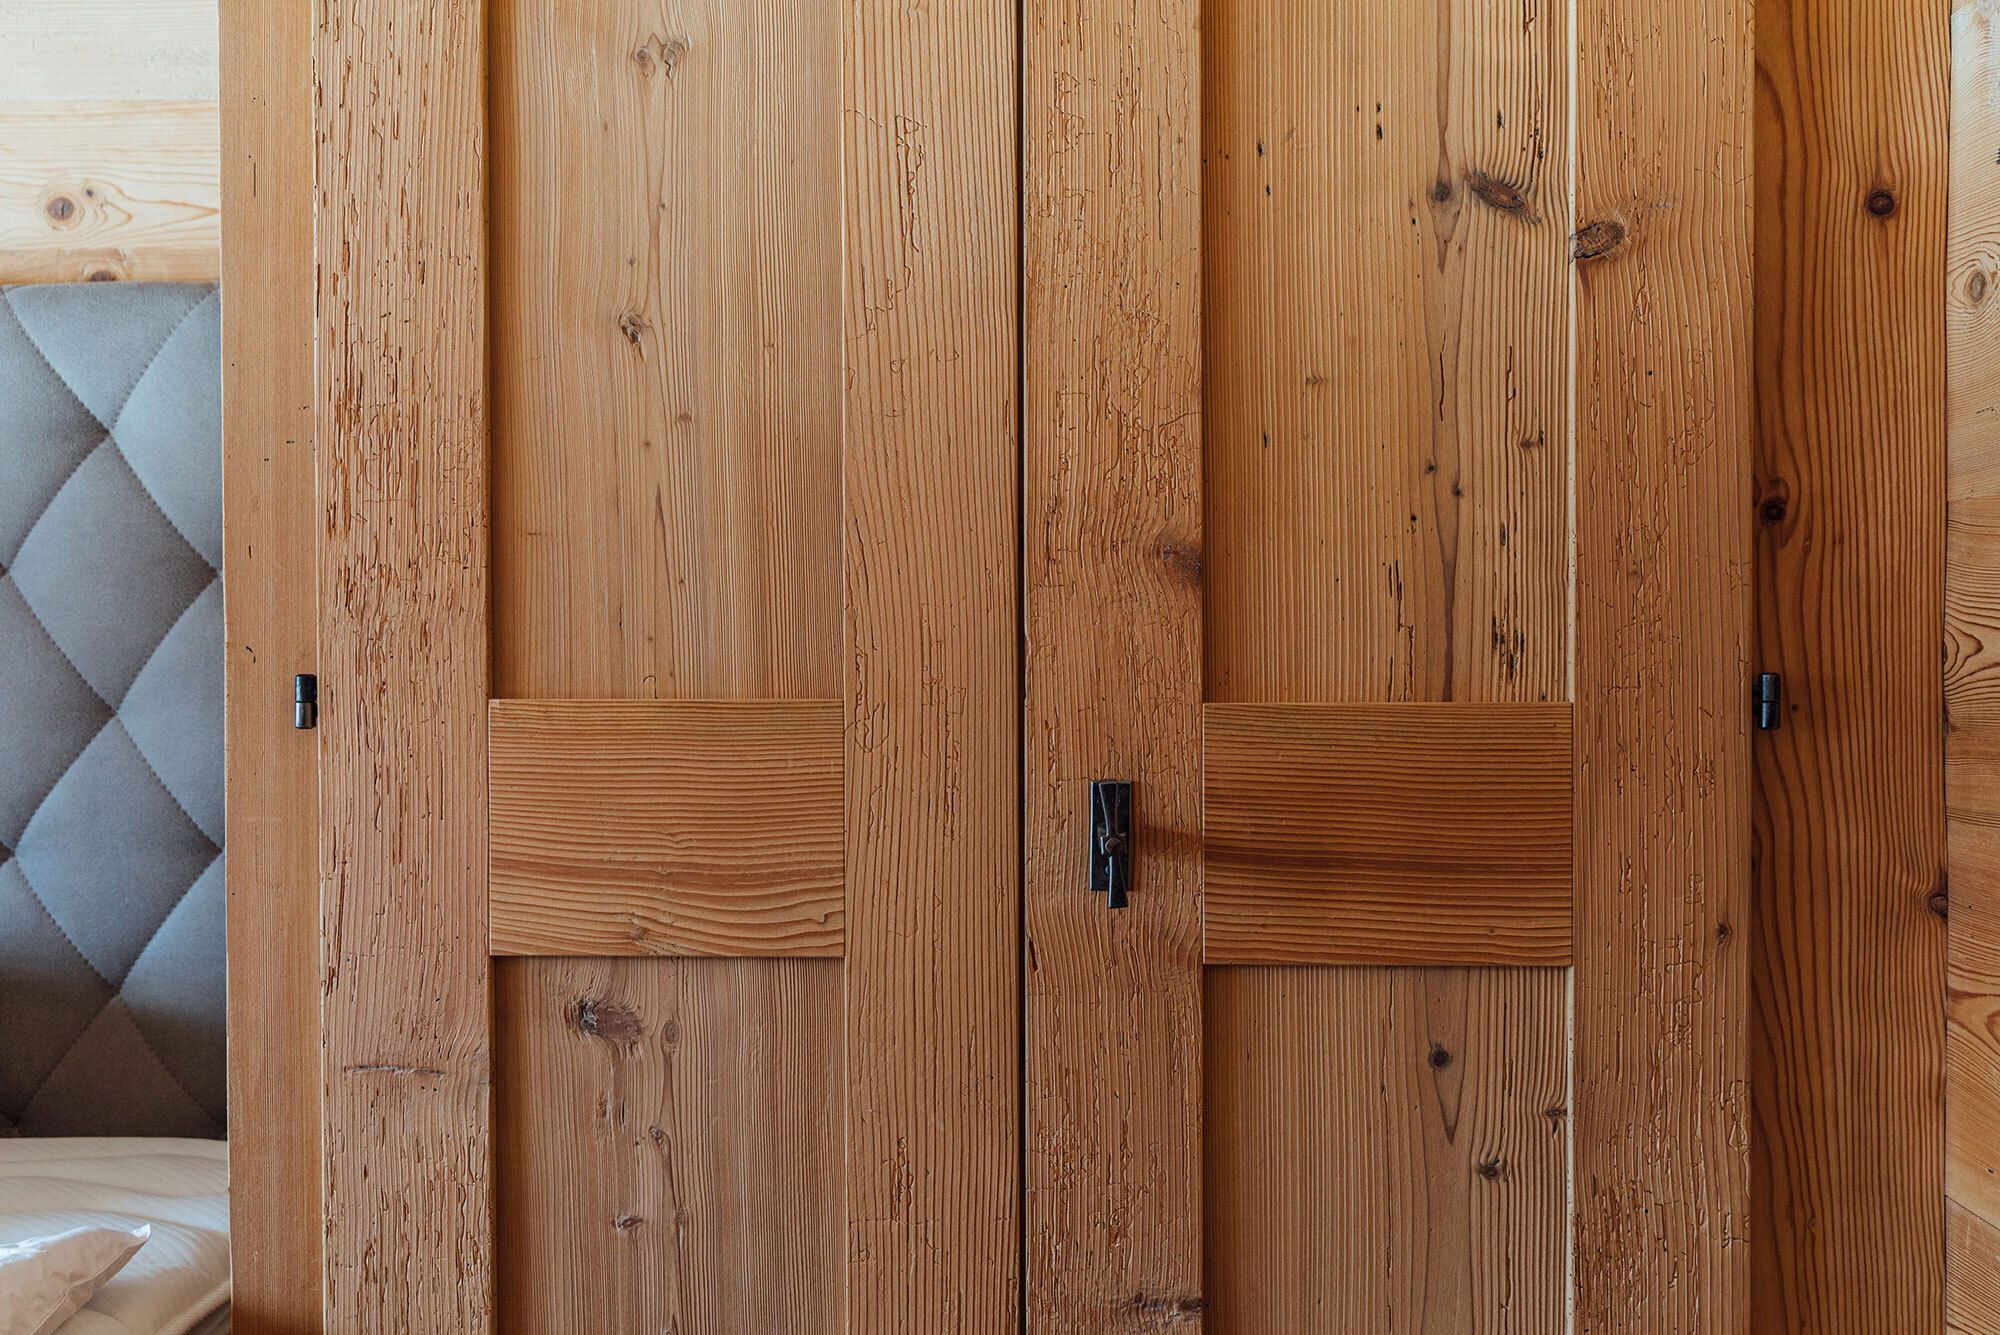 01-oldwood-wood-cupboard-rustic.jpg